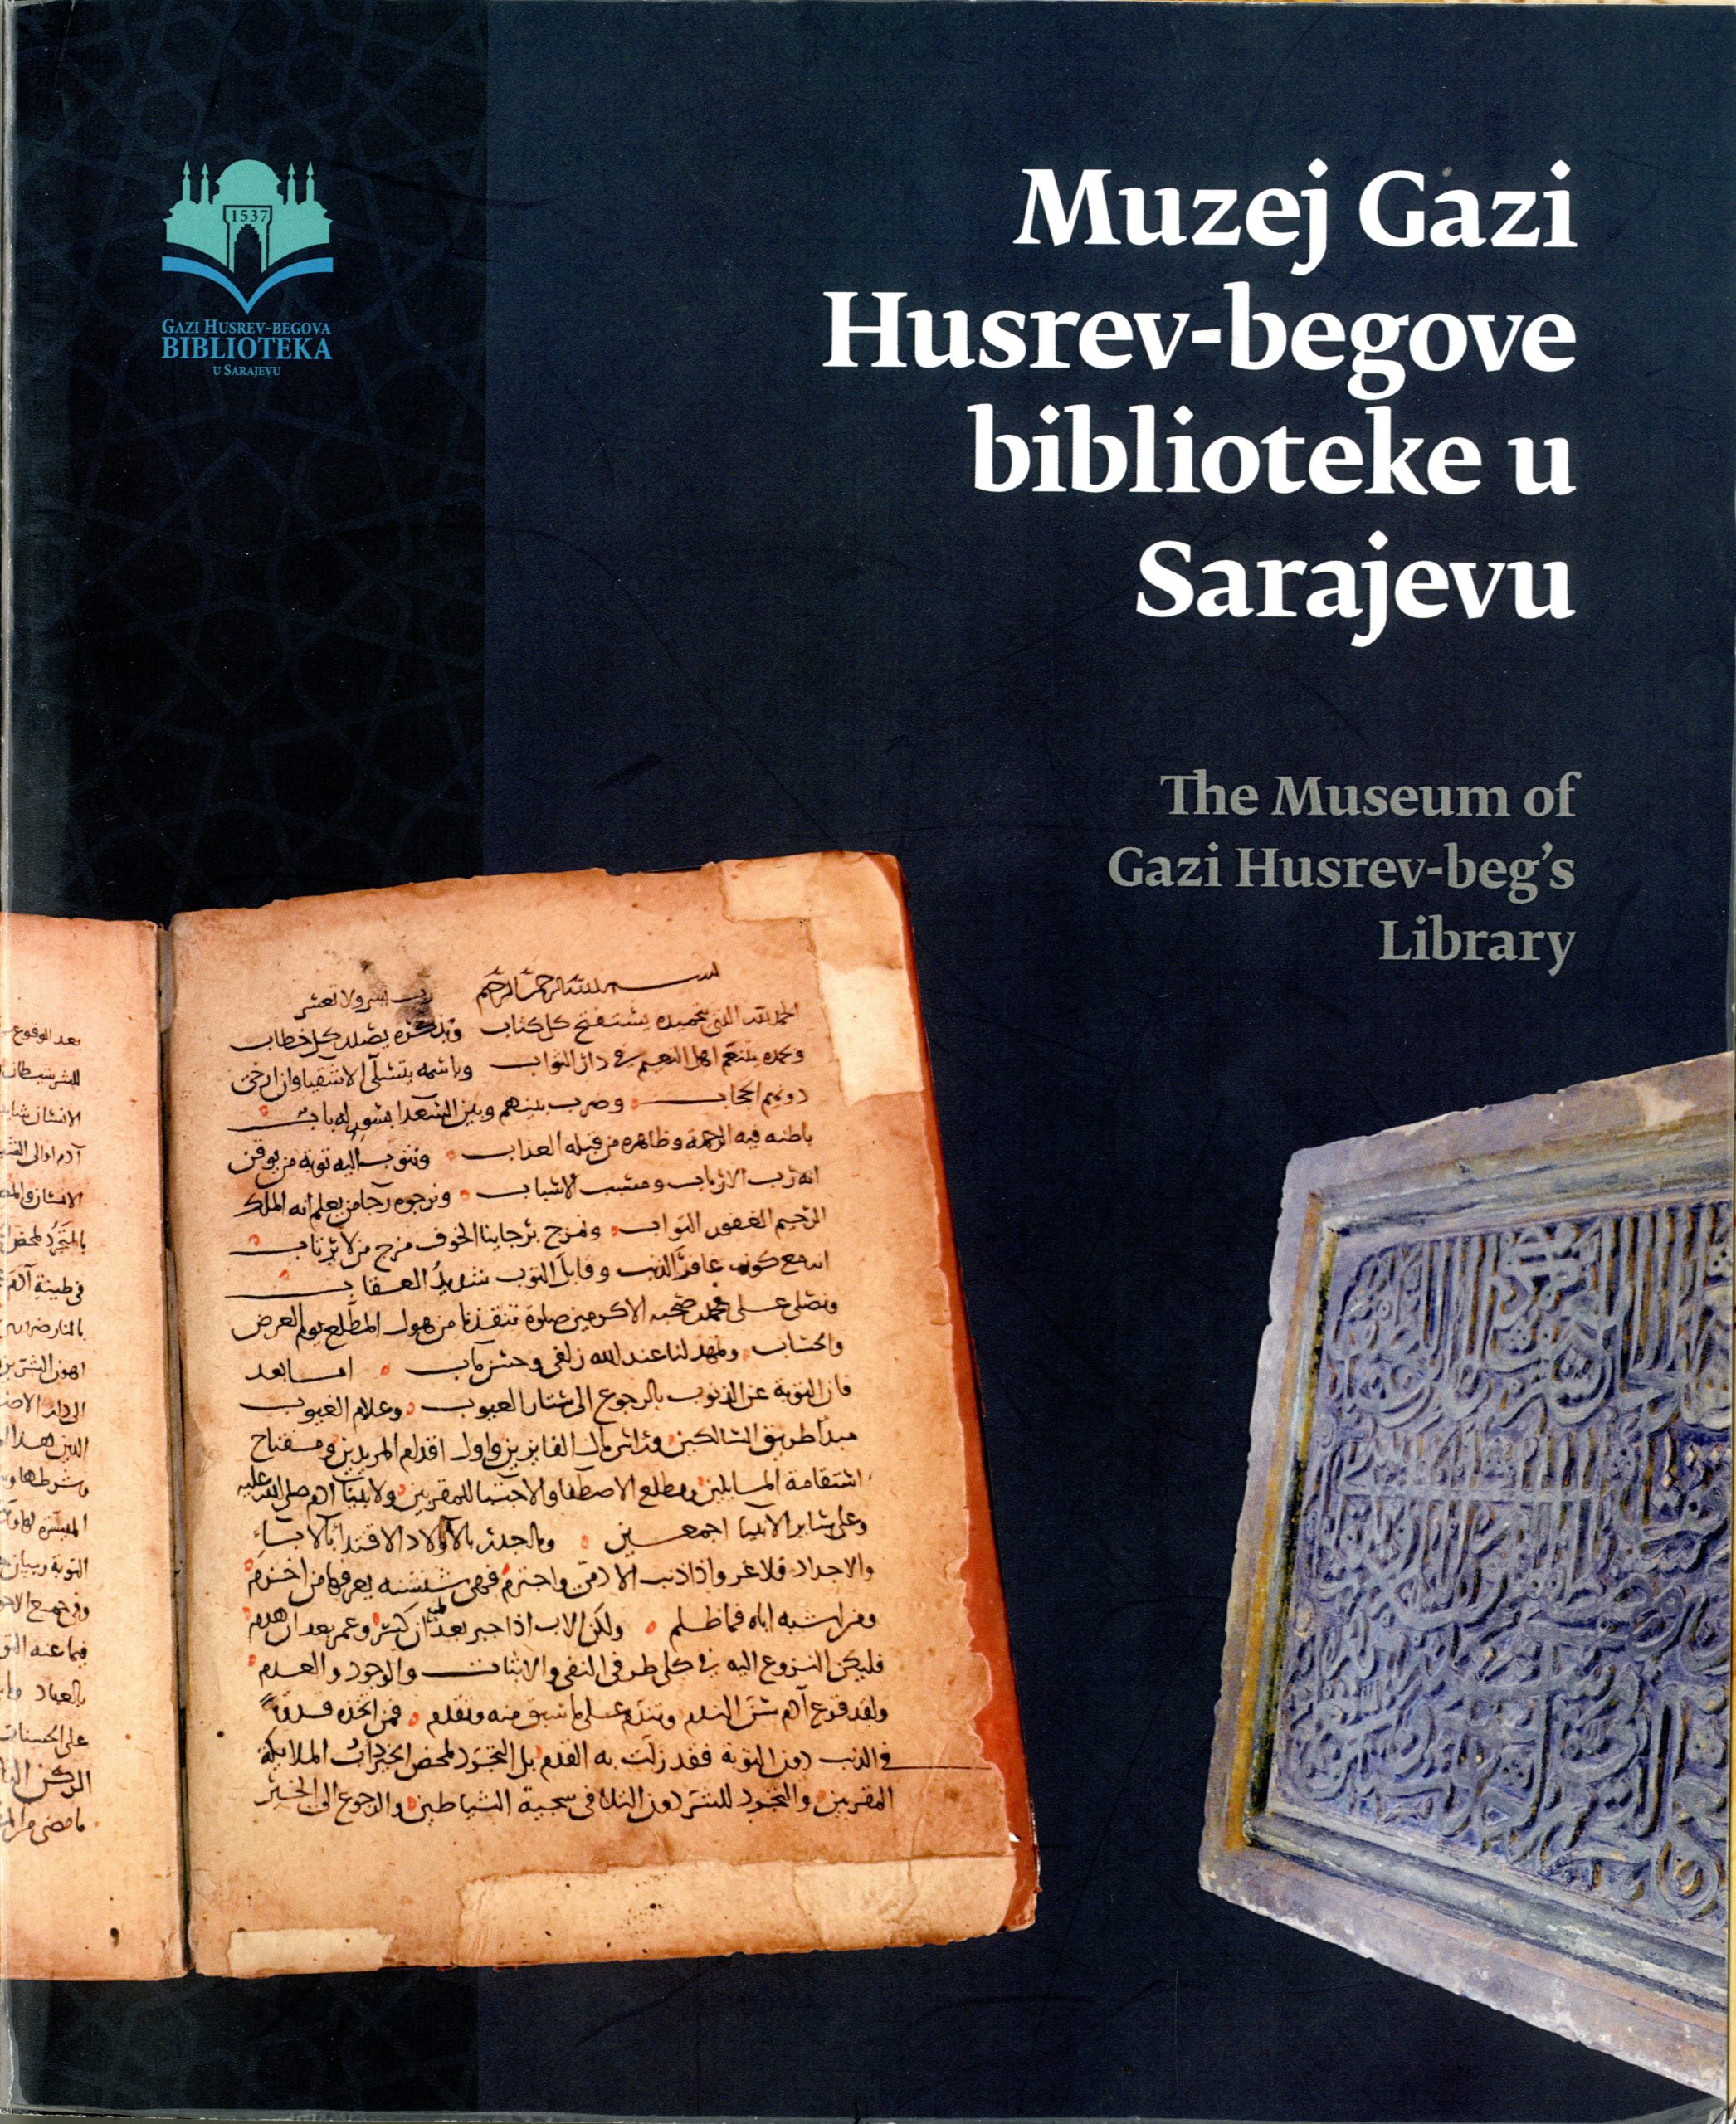 Katalog: Muzej Gazi Husrev-begove biblioteke u Sarajevu